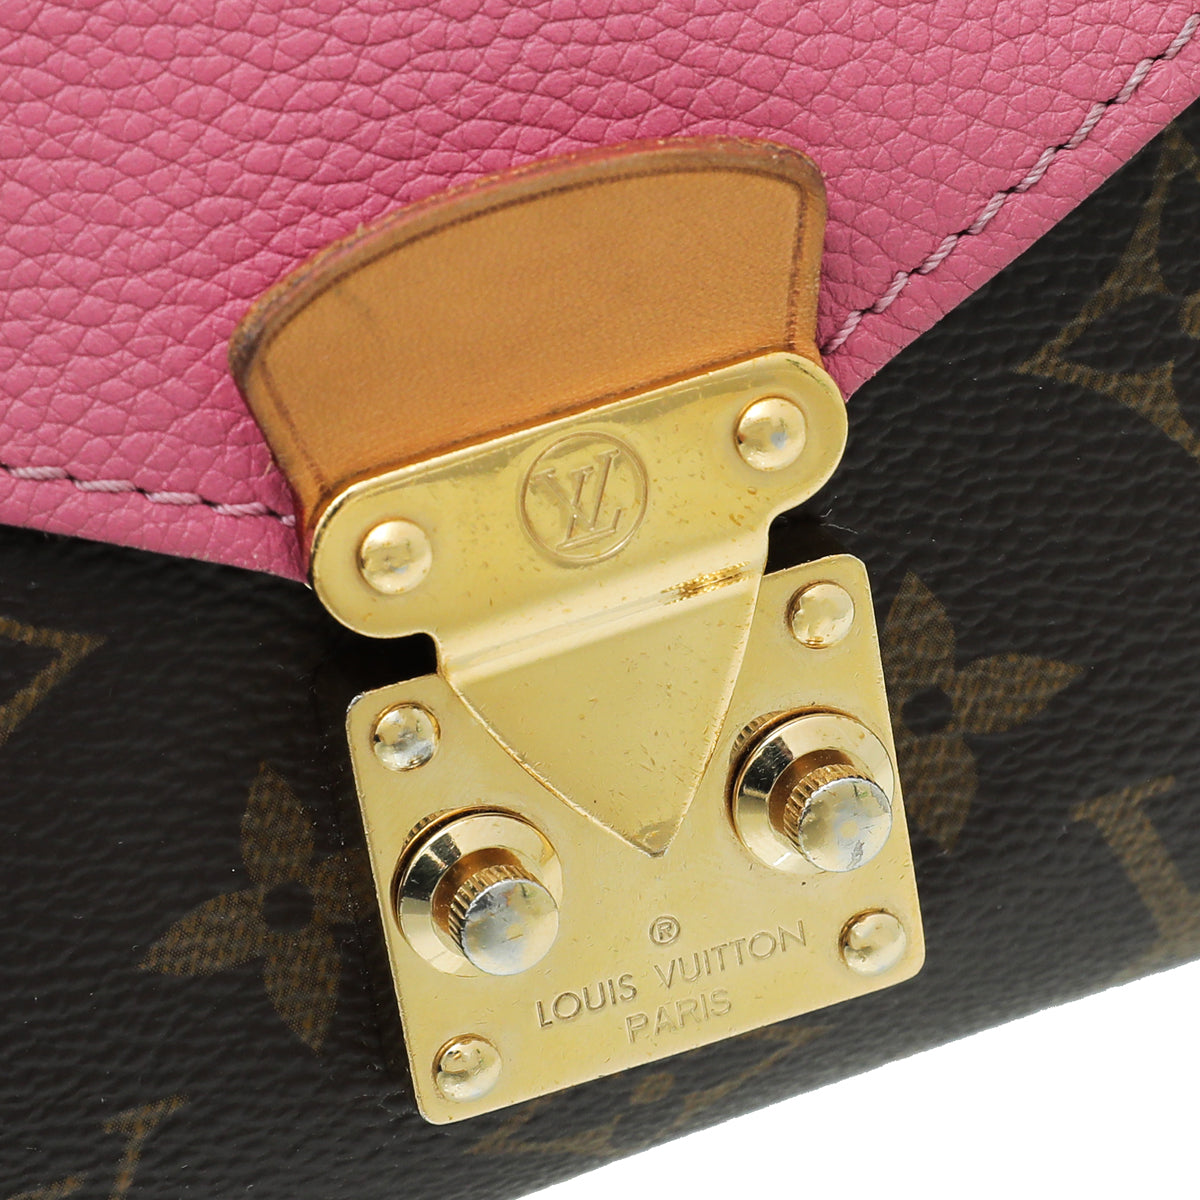 Louis Vuitton Bicolor Pallas Chain Bag – The Closet